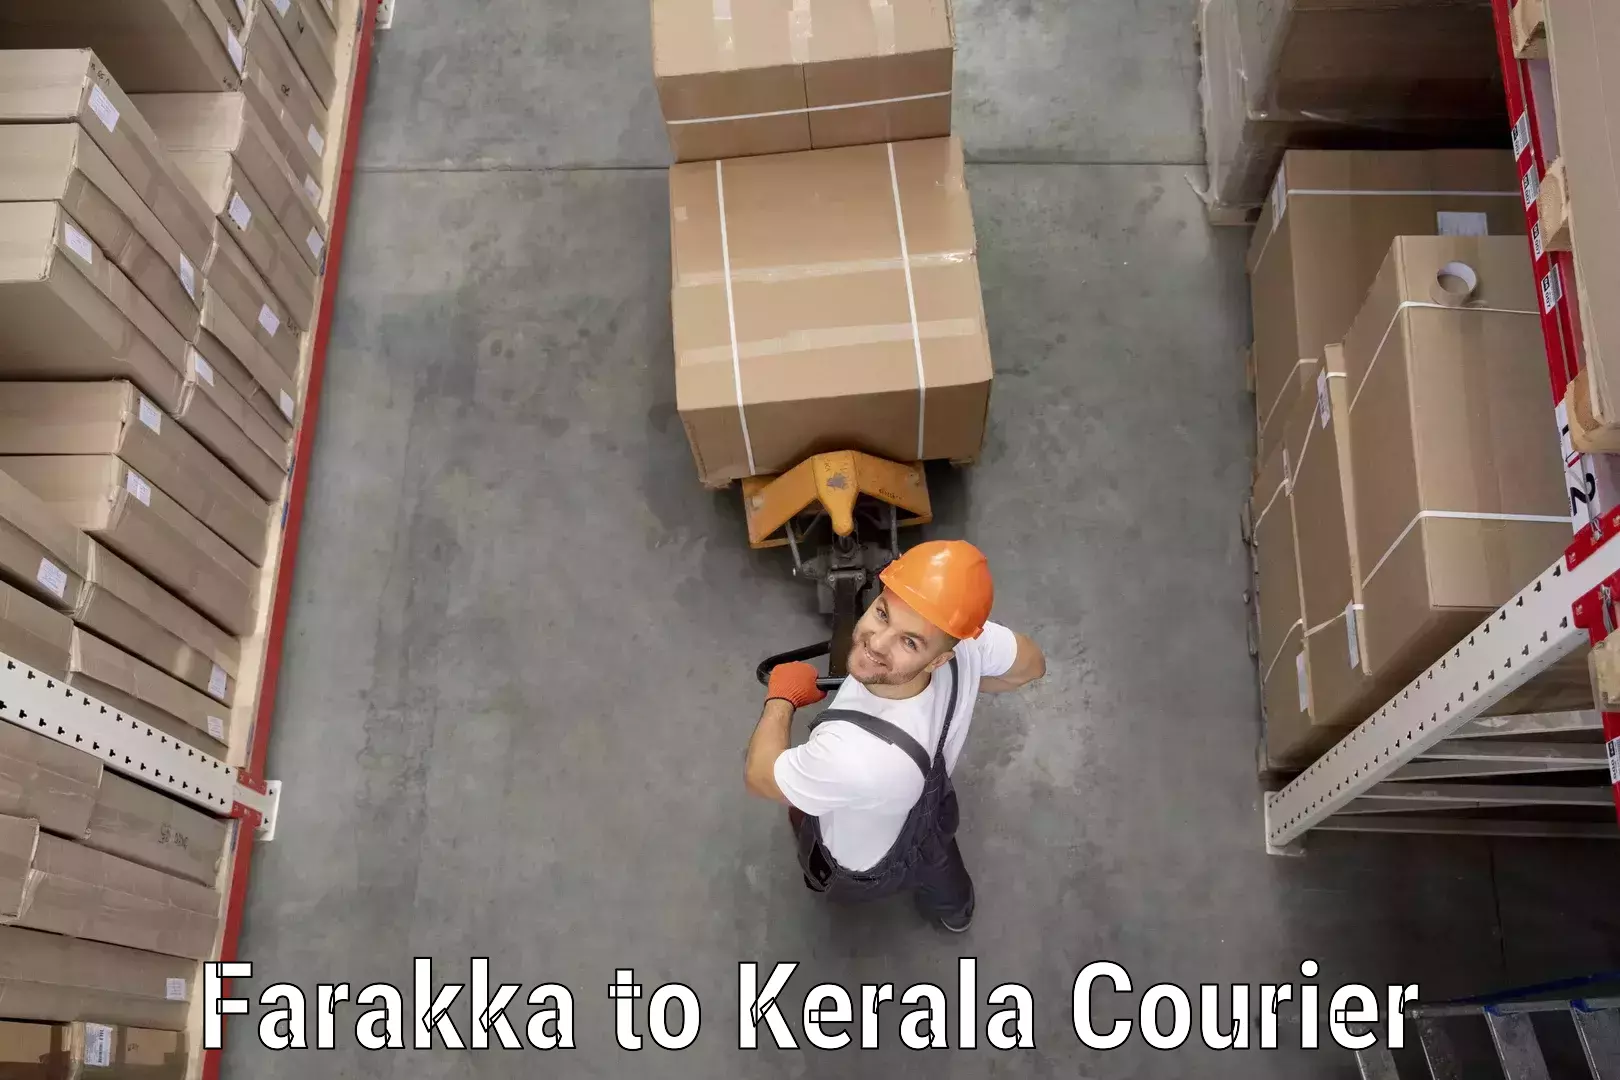 Holiday shipping services Farakka to Kerala